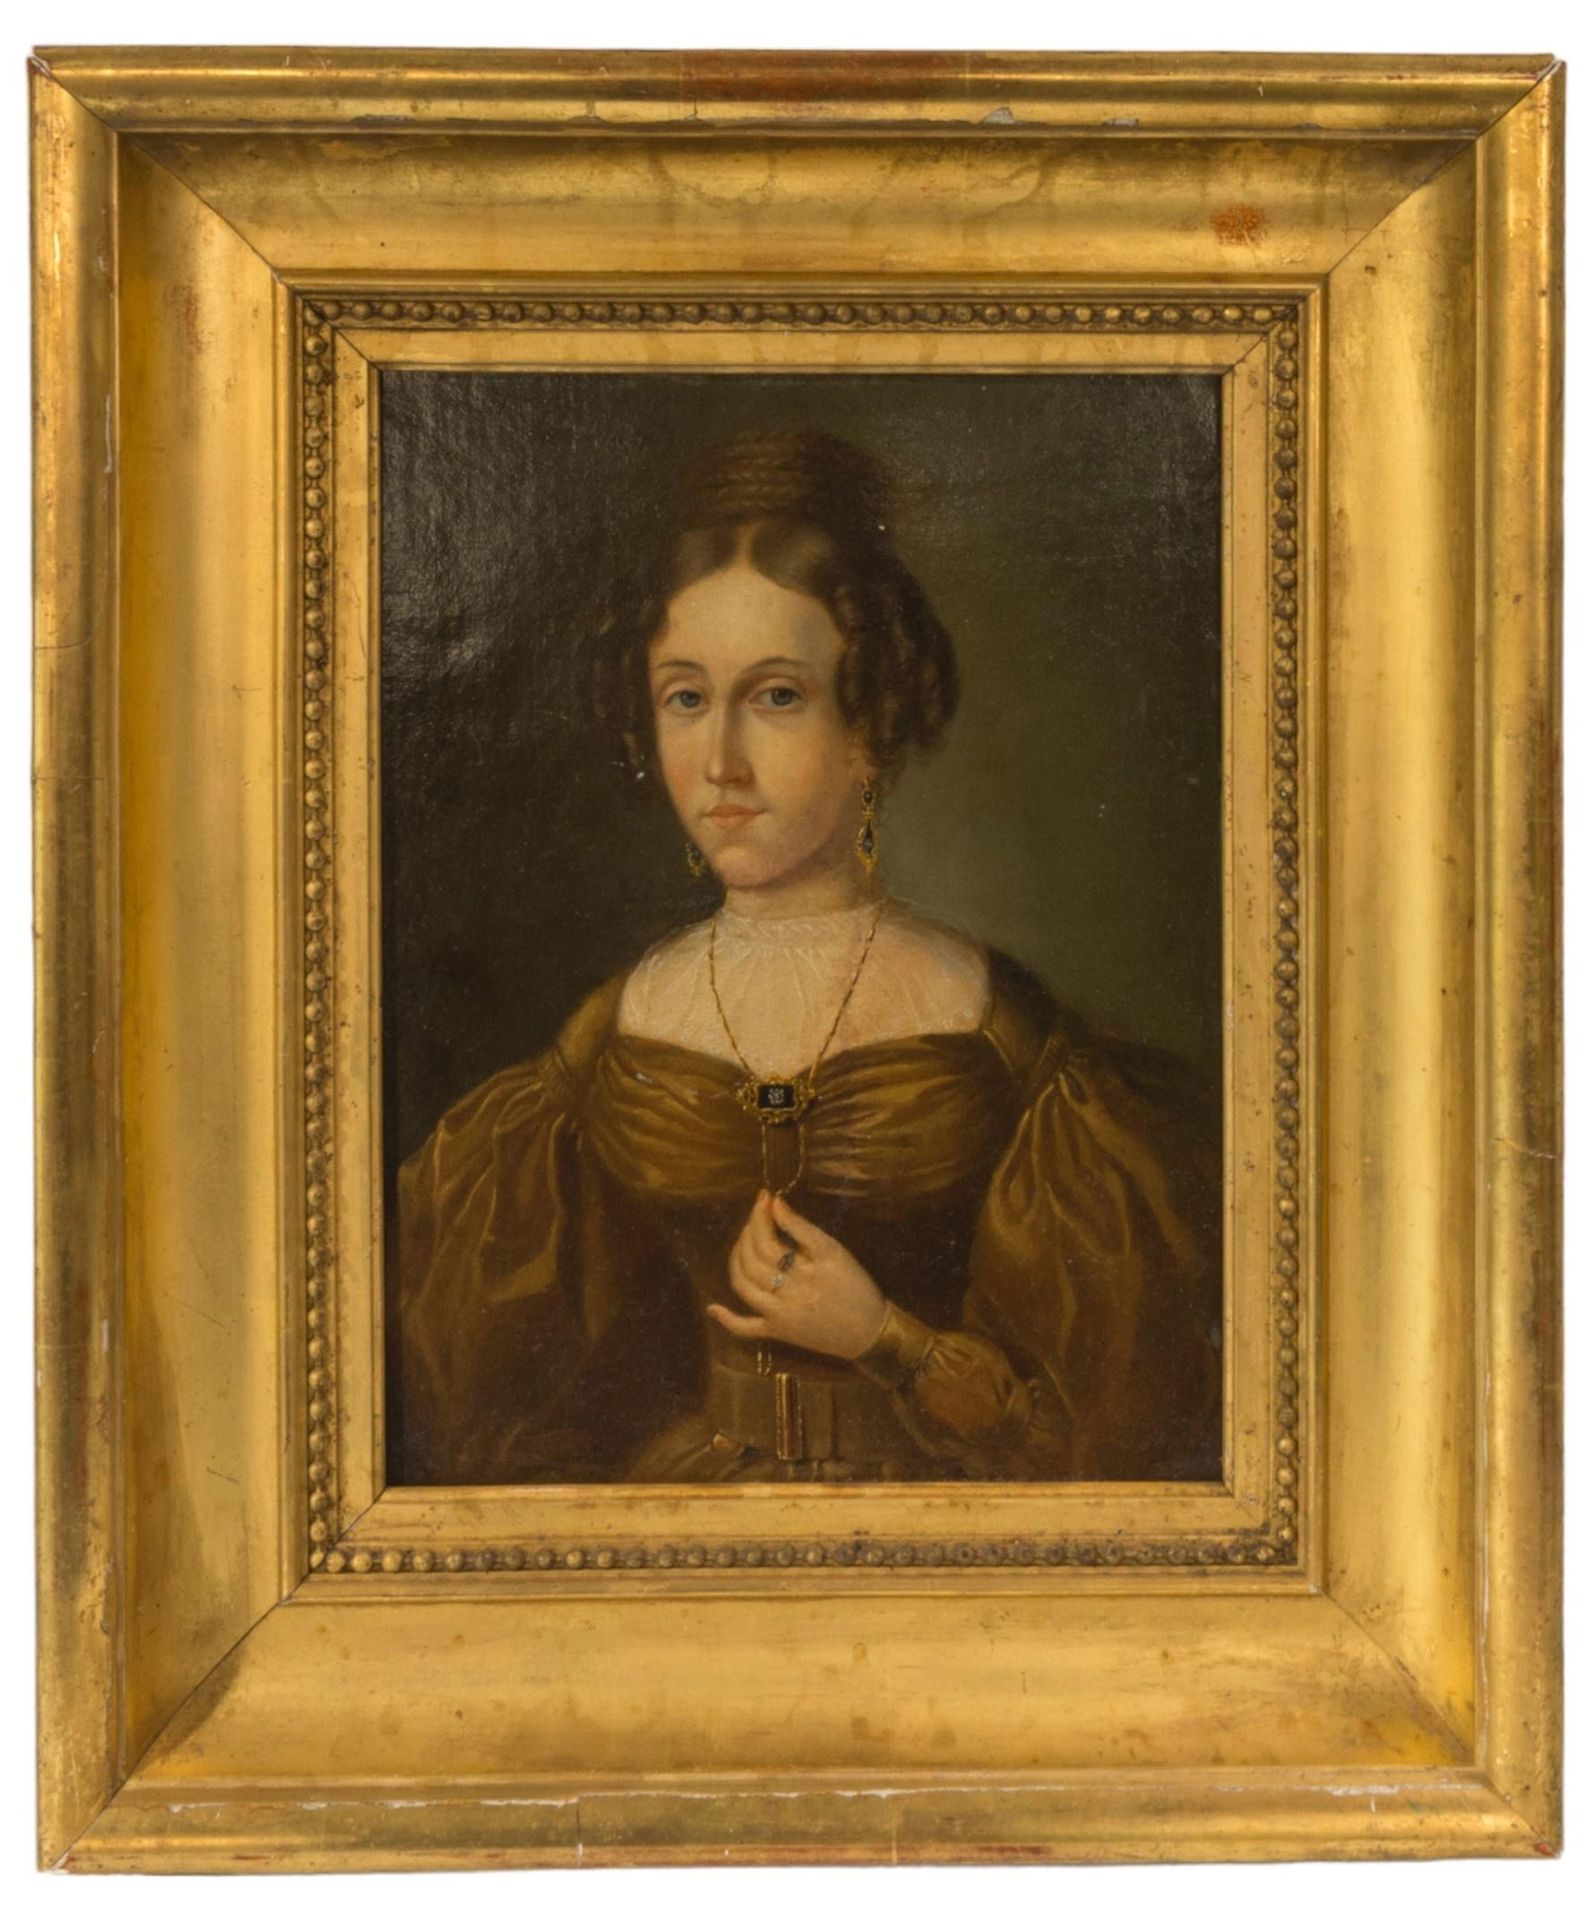 Null 一幅 18 世纪晚期/19 世纪早期的油画肖像，裱在木板上，描绘了一位身着优雅长袍的贵妇人，她紧握项链，未署名，装在一个时期的镀金画框中 34 x 2&hellip;